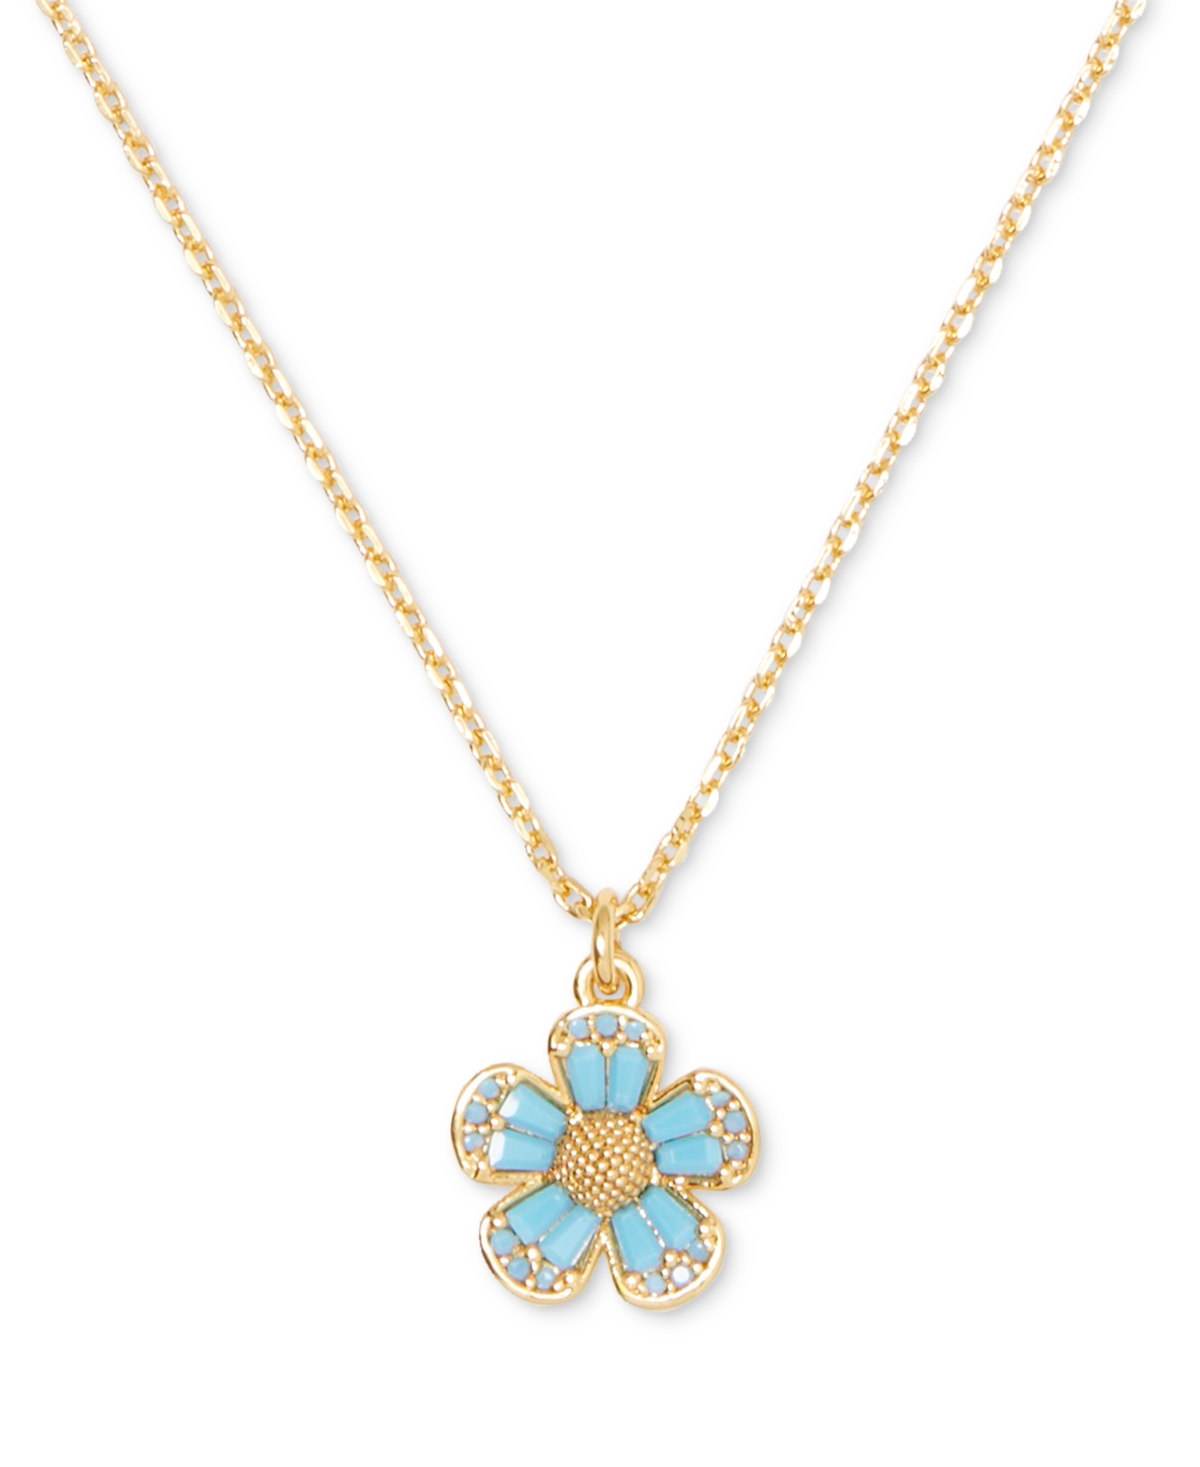 Gold-Tone Stone Fleurette Pendant Necklace, 16" + 3"' extender - Aqua